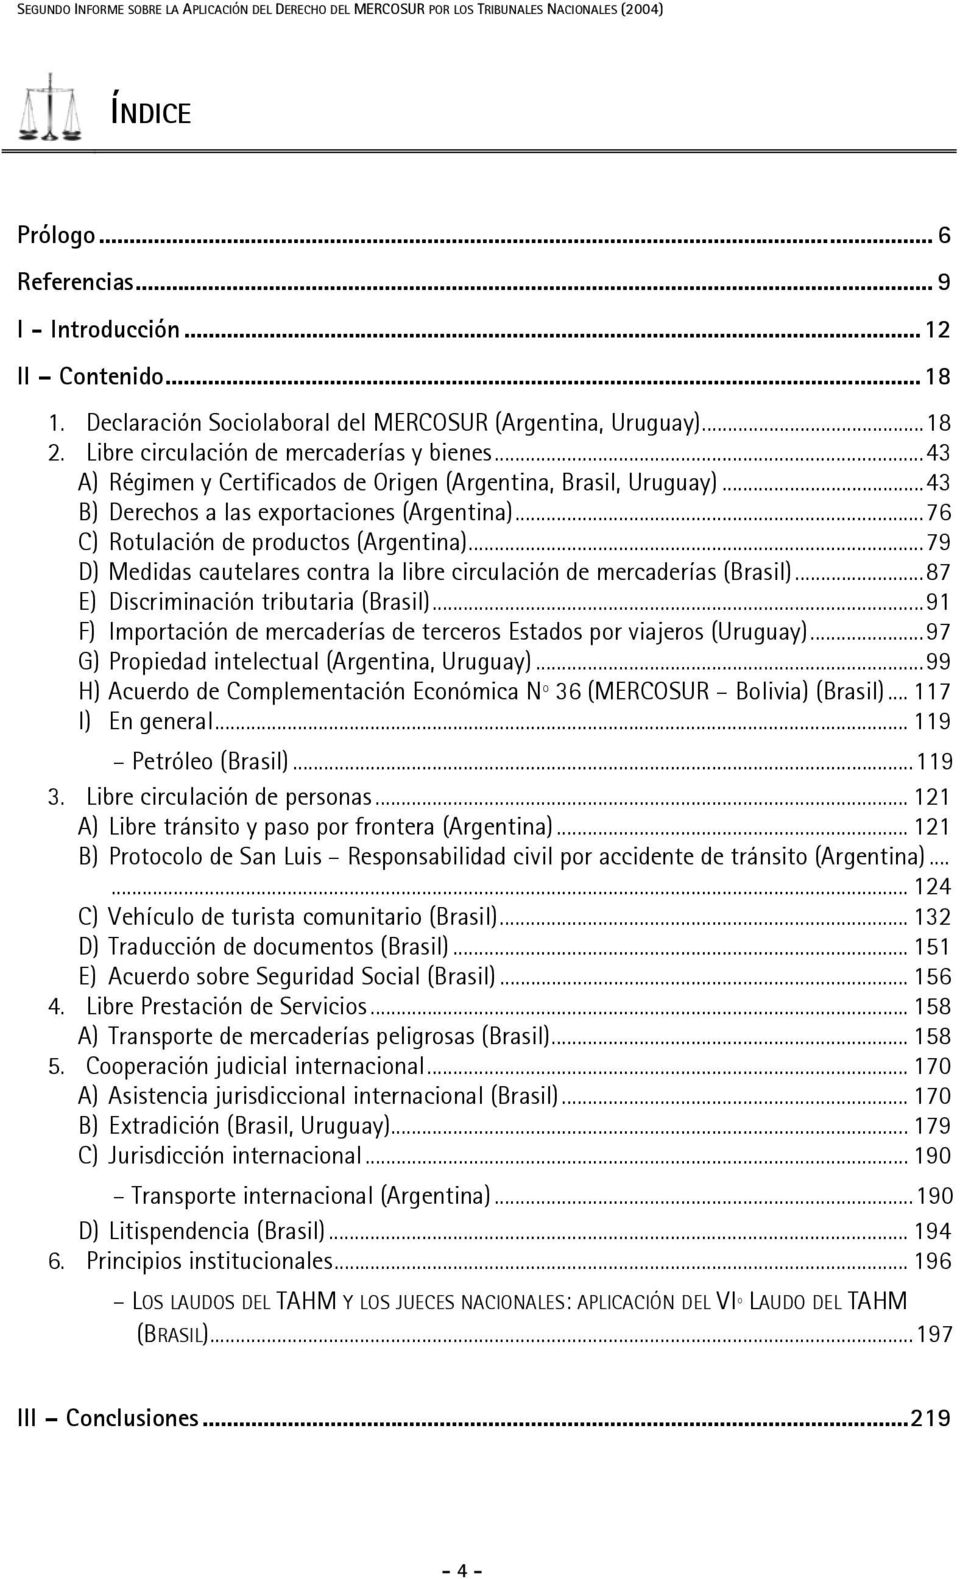 ..43 B) Derechos a las exportaciones (Argentina)...76 C) Rotulación de productos (Argentina)...79 D) Medidas cautelares contra la libre circulación de mercaderías (Brasil).